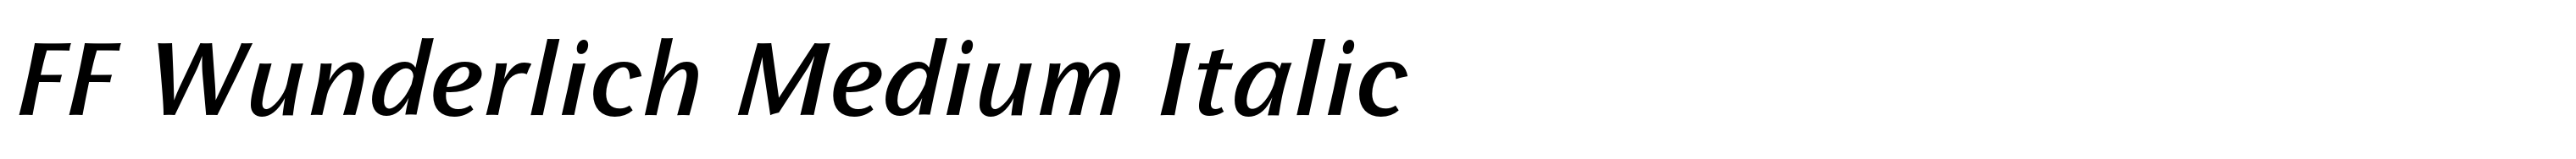 FF Wunderlich Medium Italic